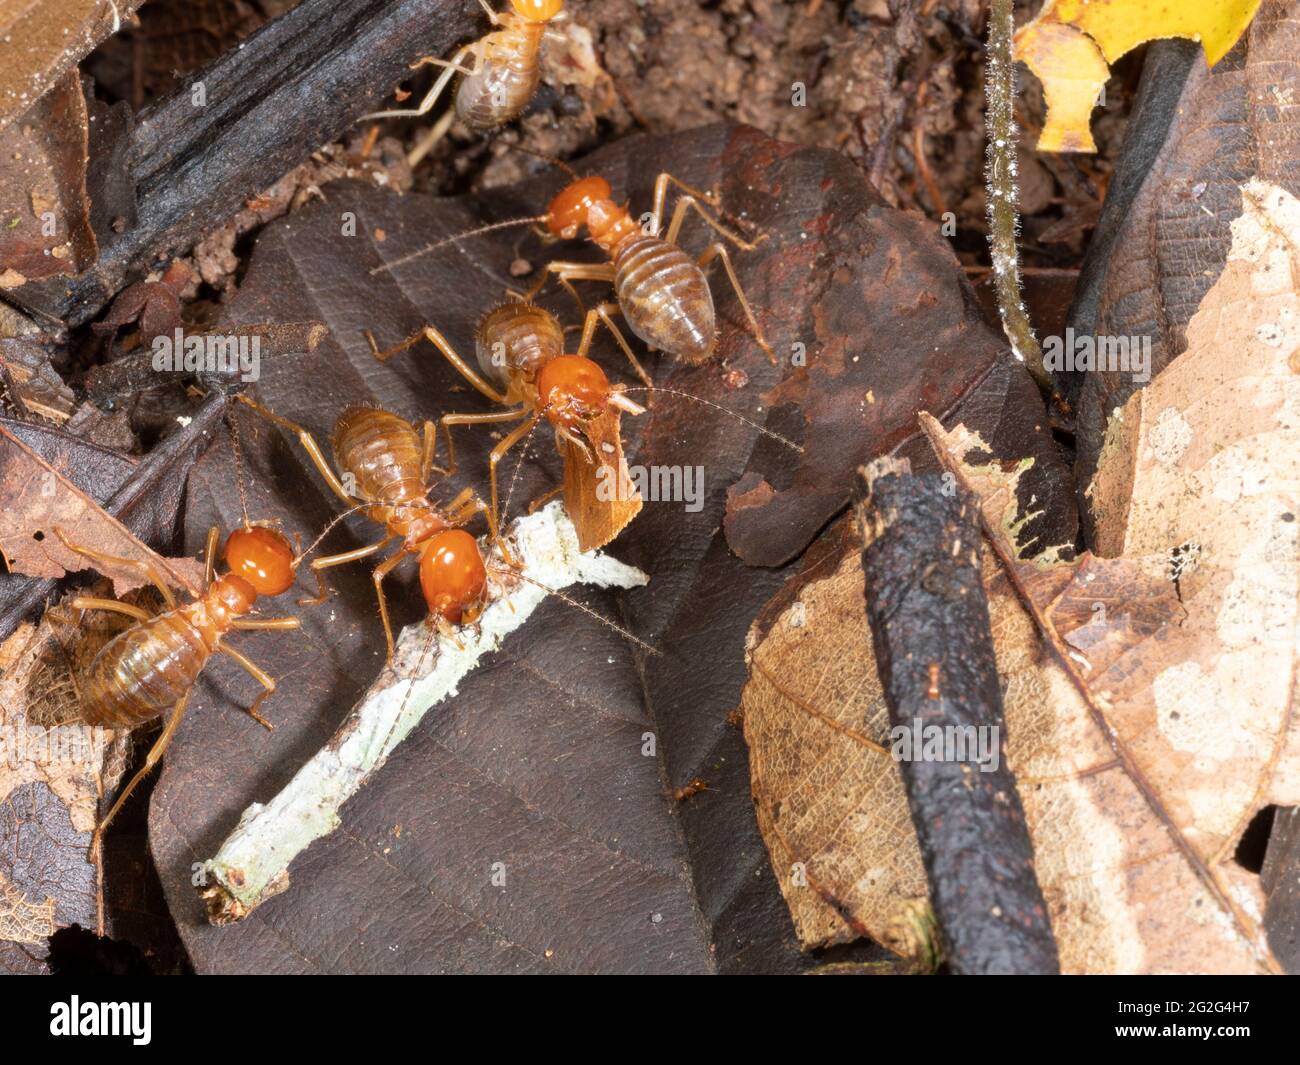 Termitas Gigantes (Macrotermes sp.) en el suelo de la selva tropical, provincia de Napo, Ecuador. Macrotermes cultiva un hongo dentro de su nido en el que se alimentan Foto de stock